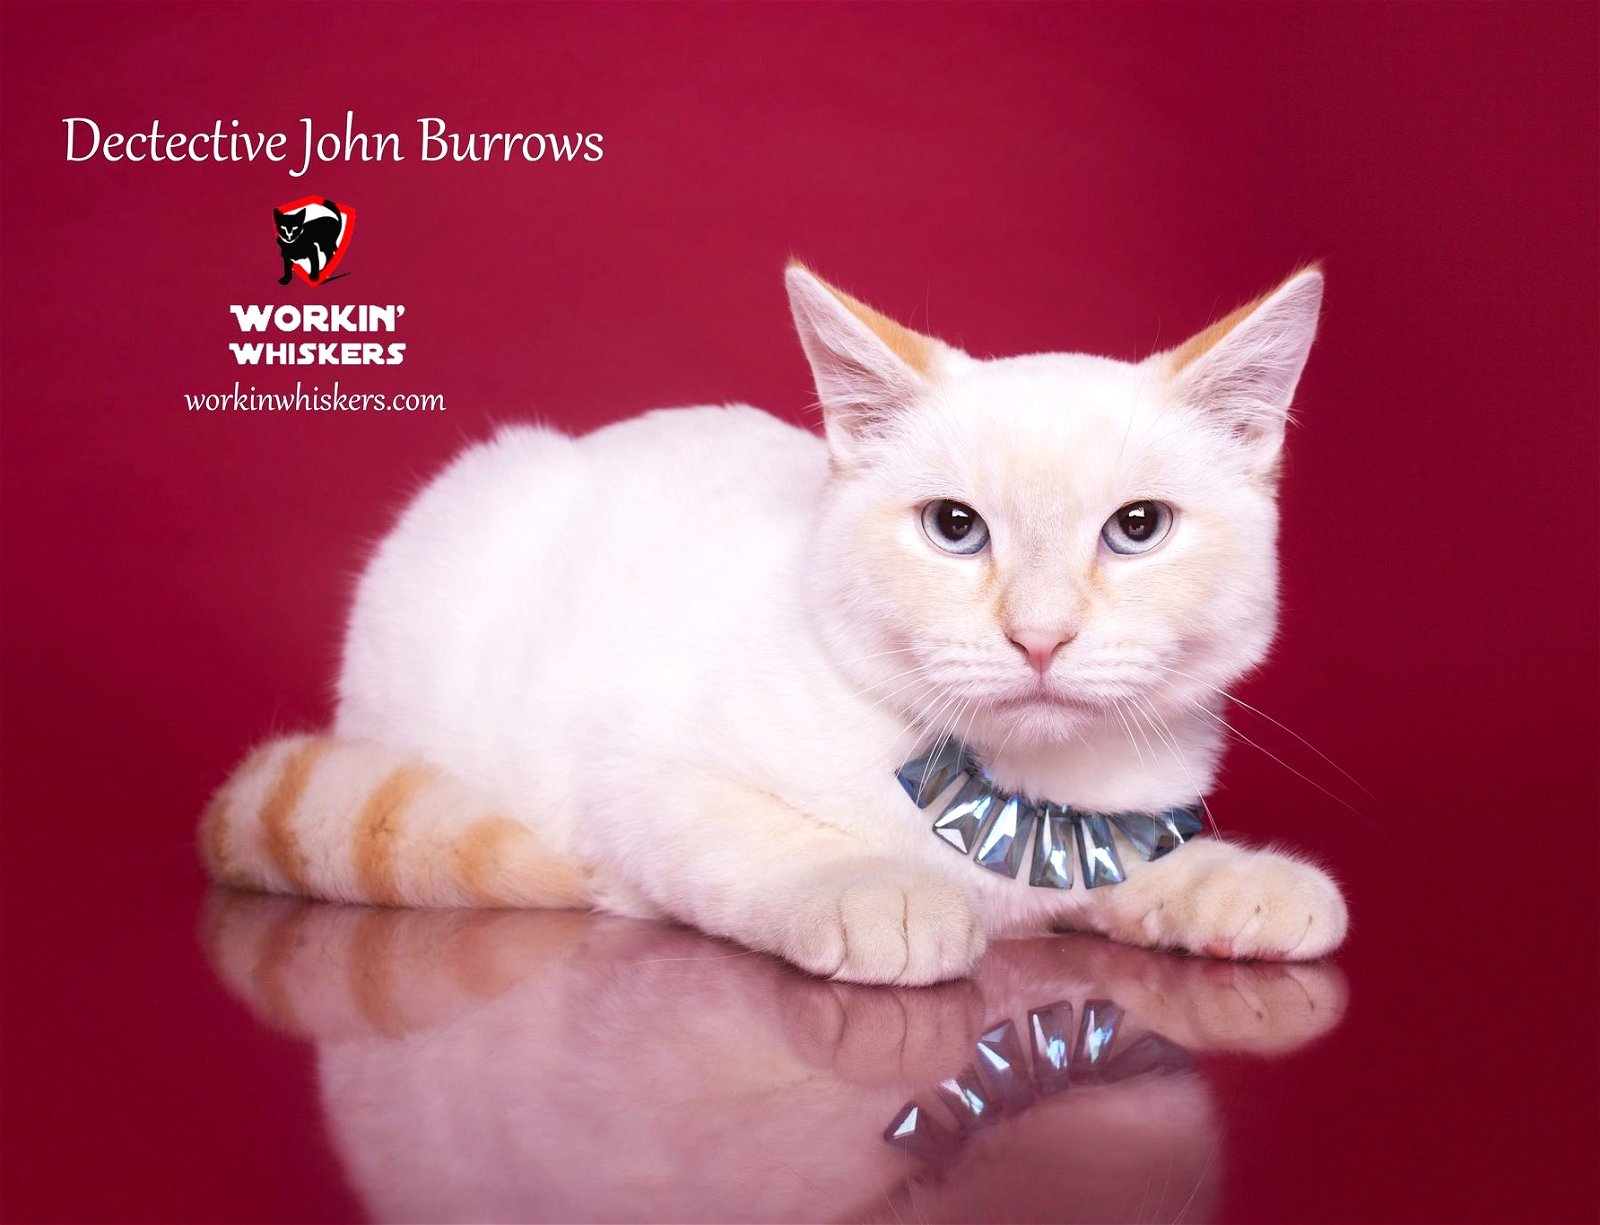 adoptable Cat in Hemet, CA named DETECTIVE JOHN BURROWS